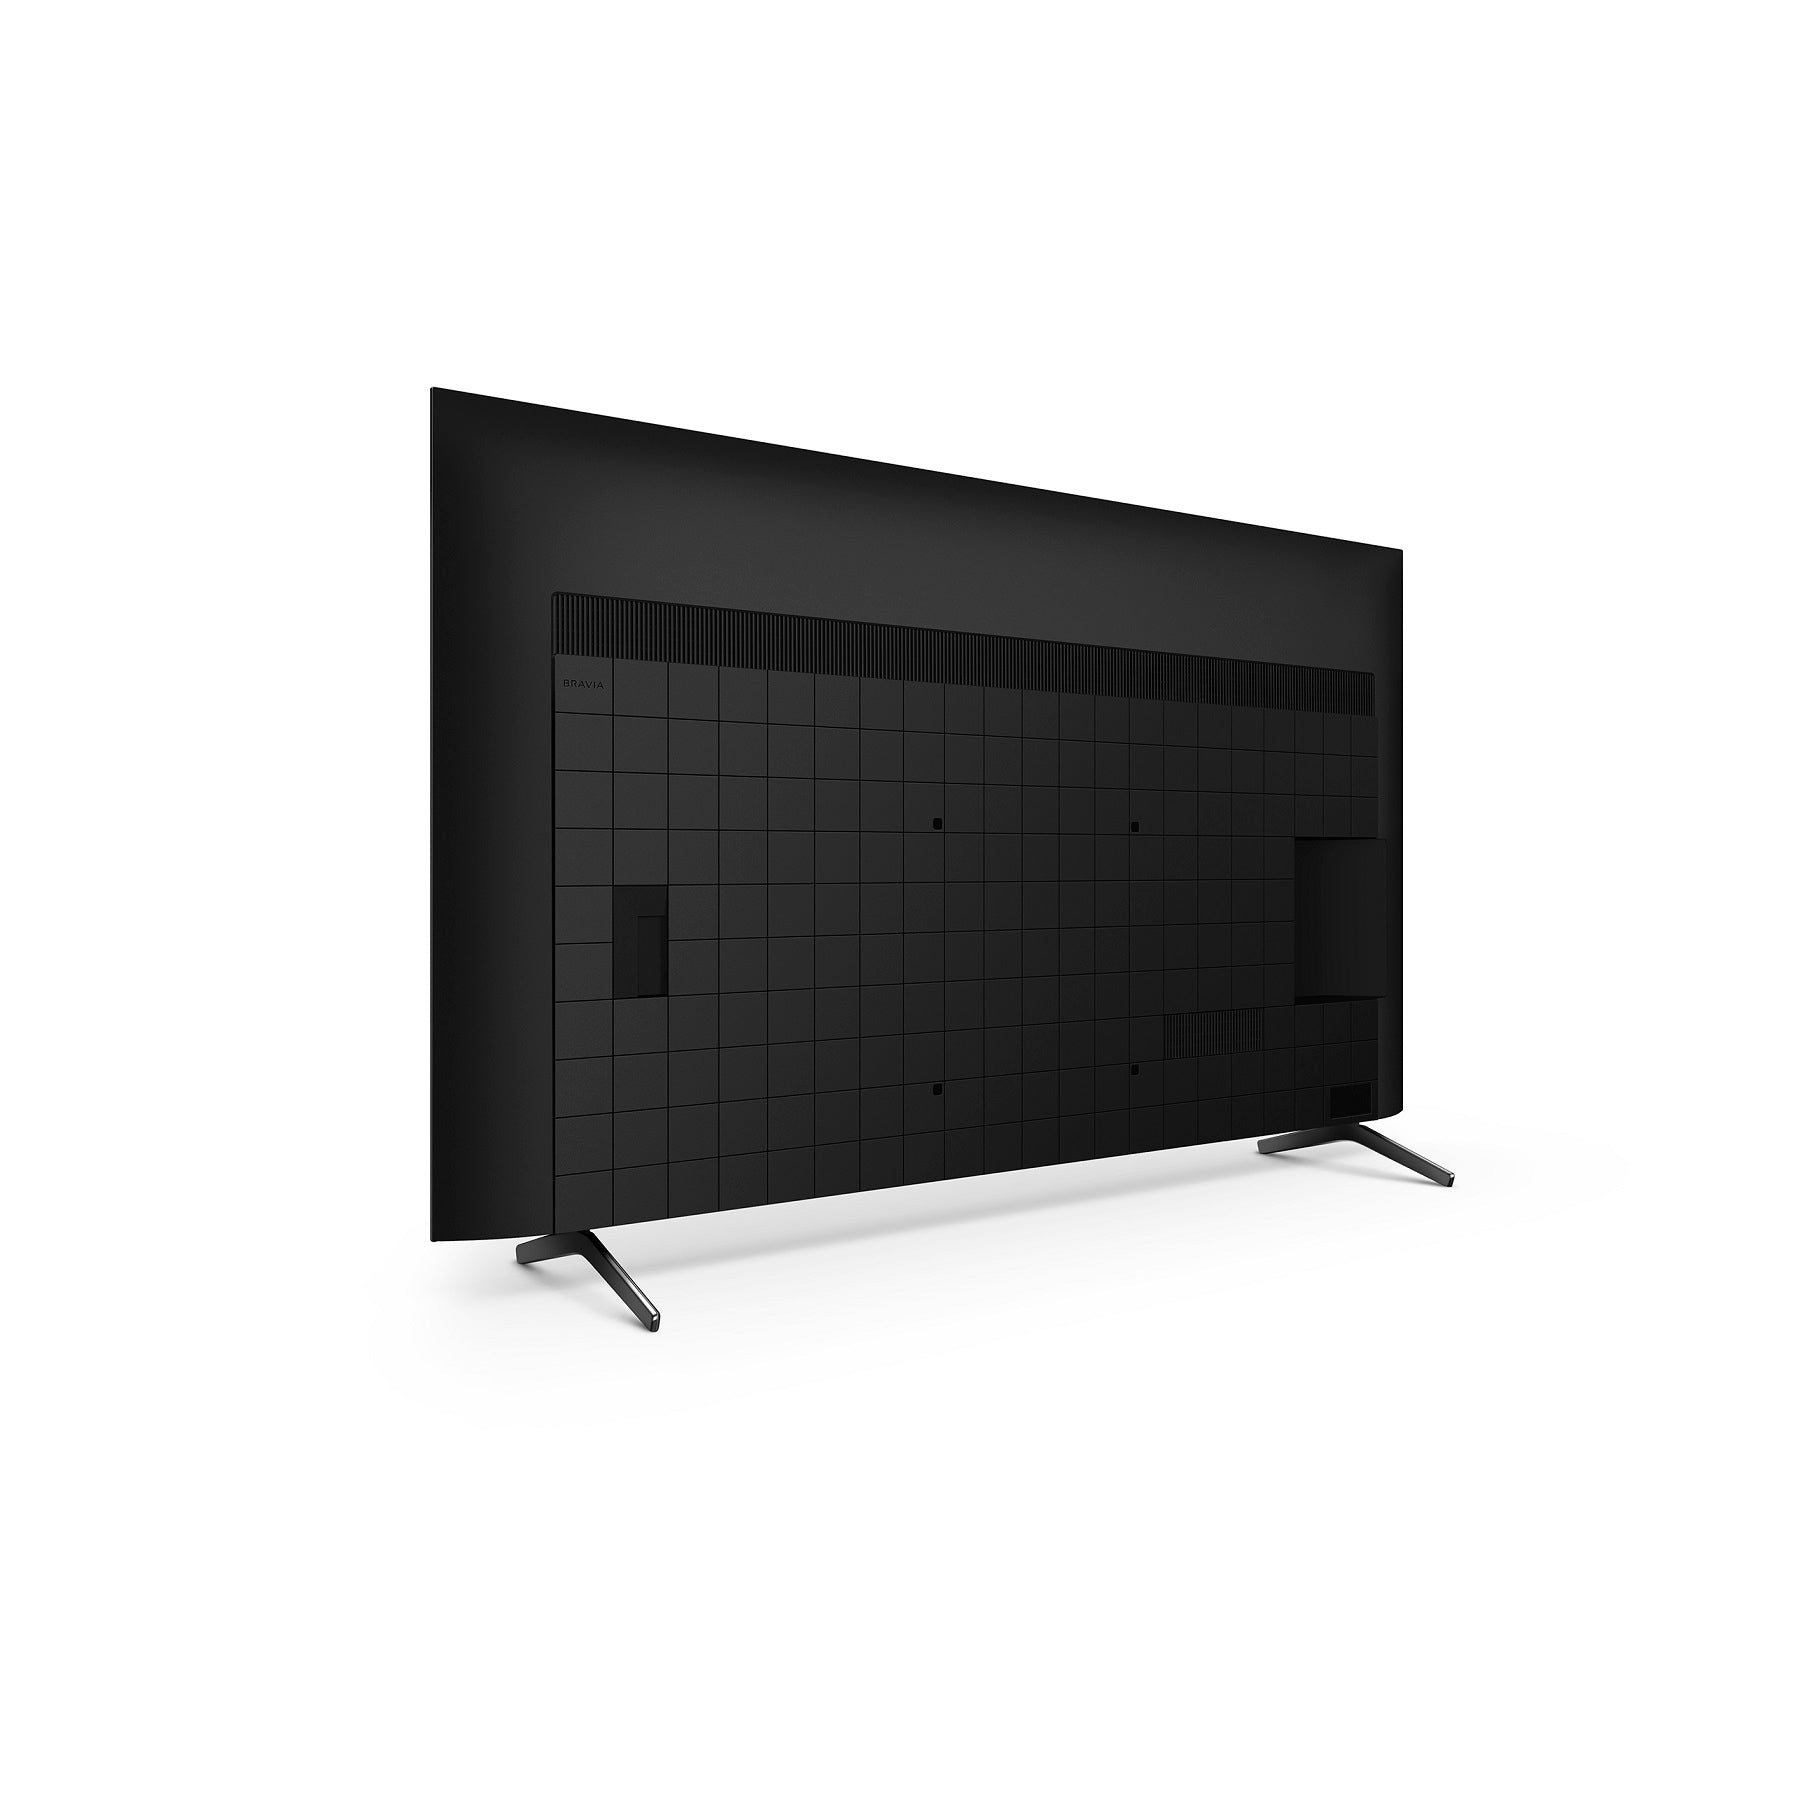 טלוויזיה BRAVIA XR 55 אינץ | DIRECT LED | 4K Ultra HD | Google TV | X85K